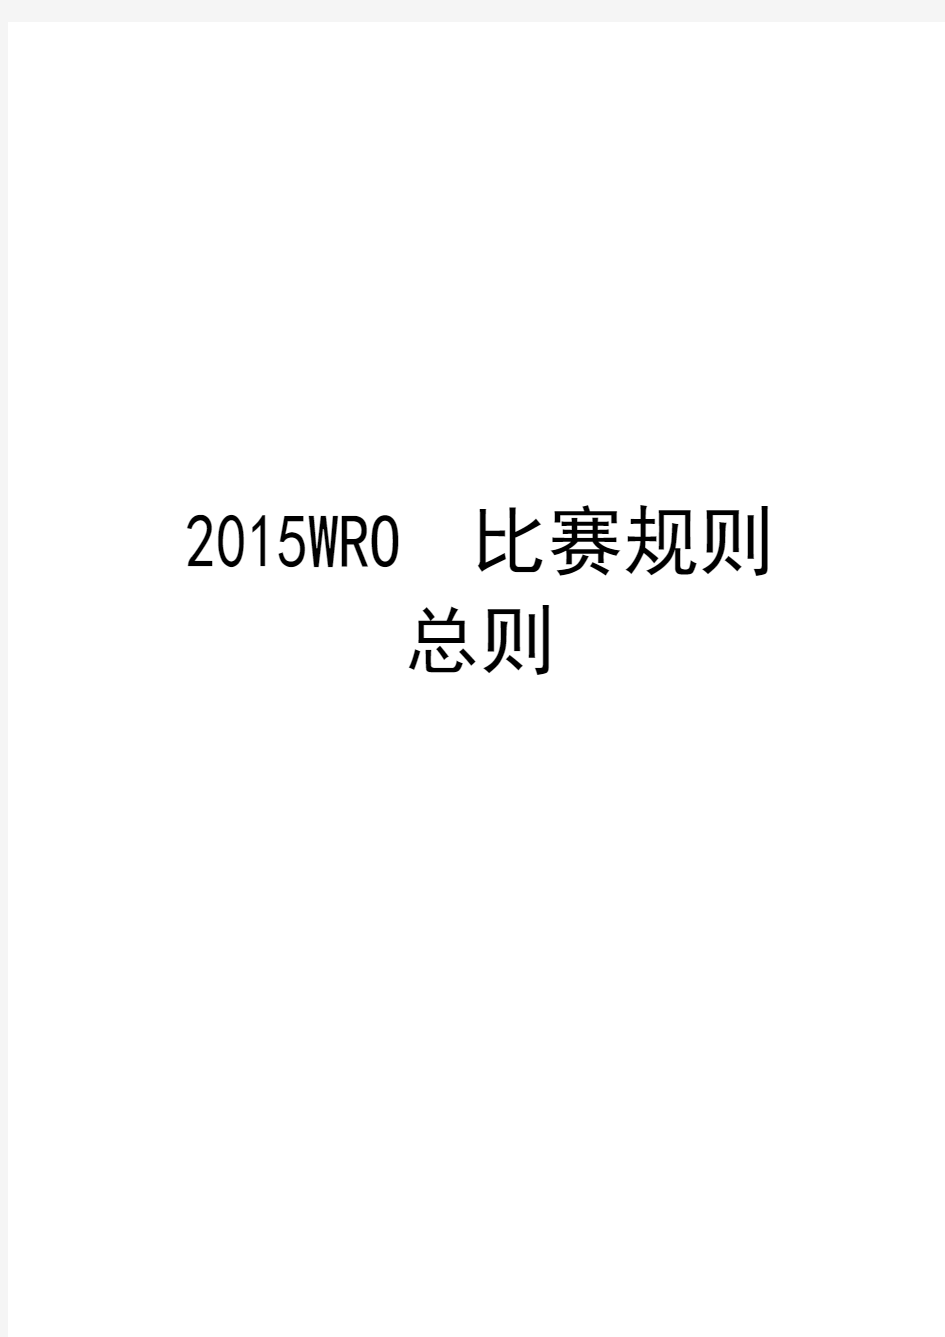 2015WRO比赛规则 总则 7月13日